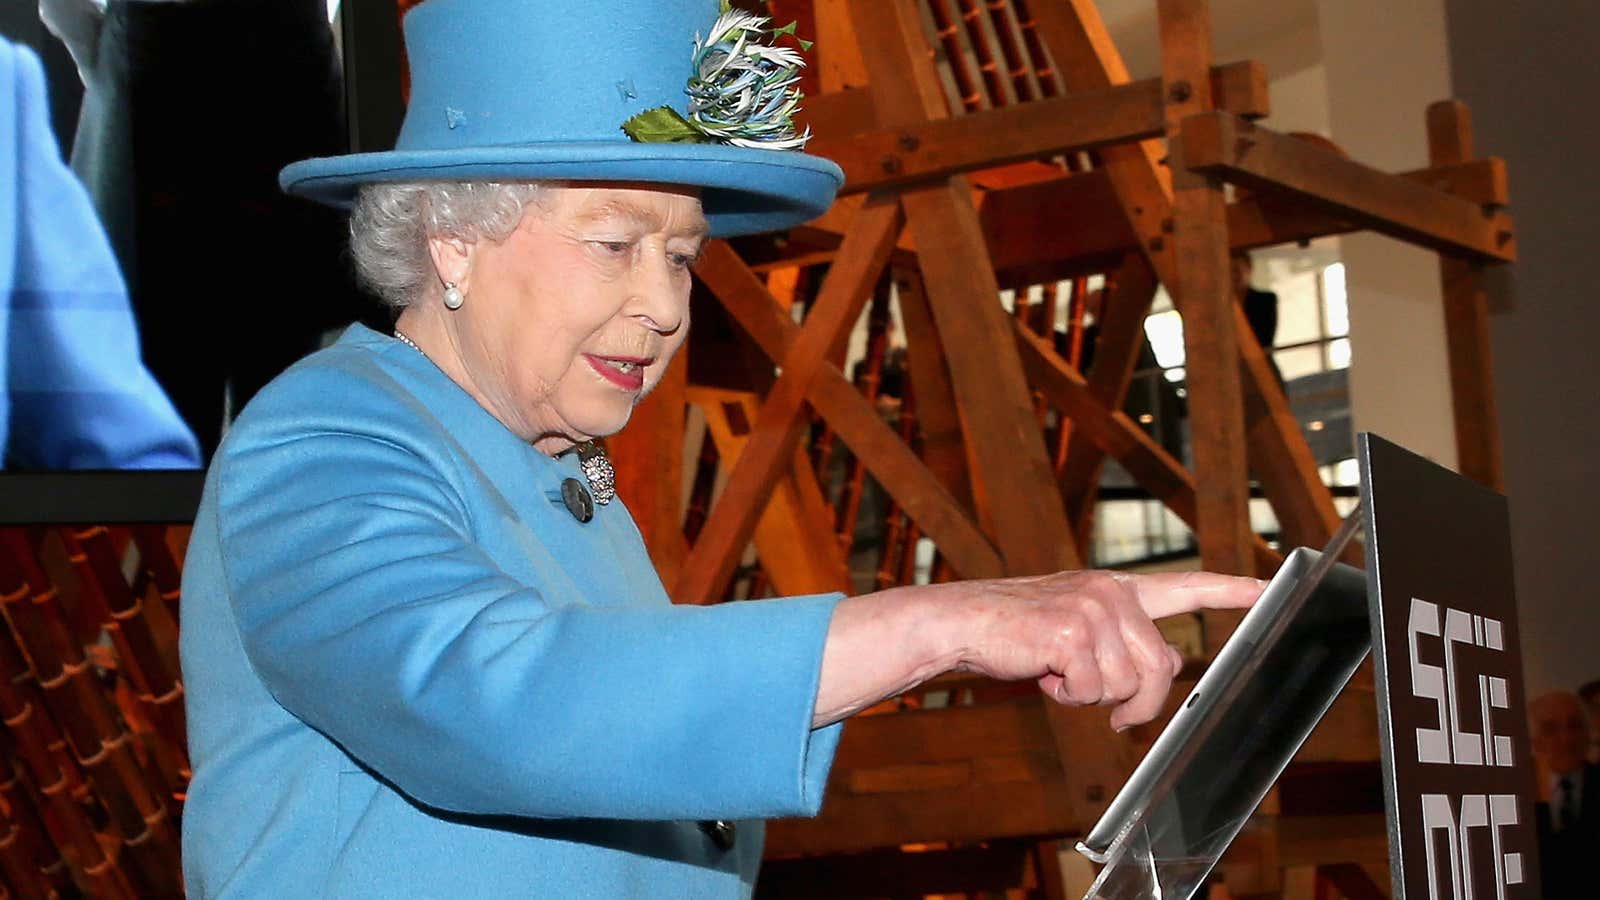 In 2014, even the Queen tweets.